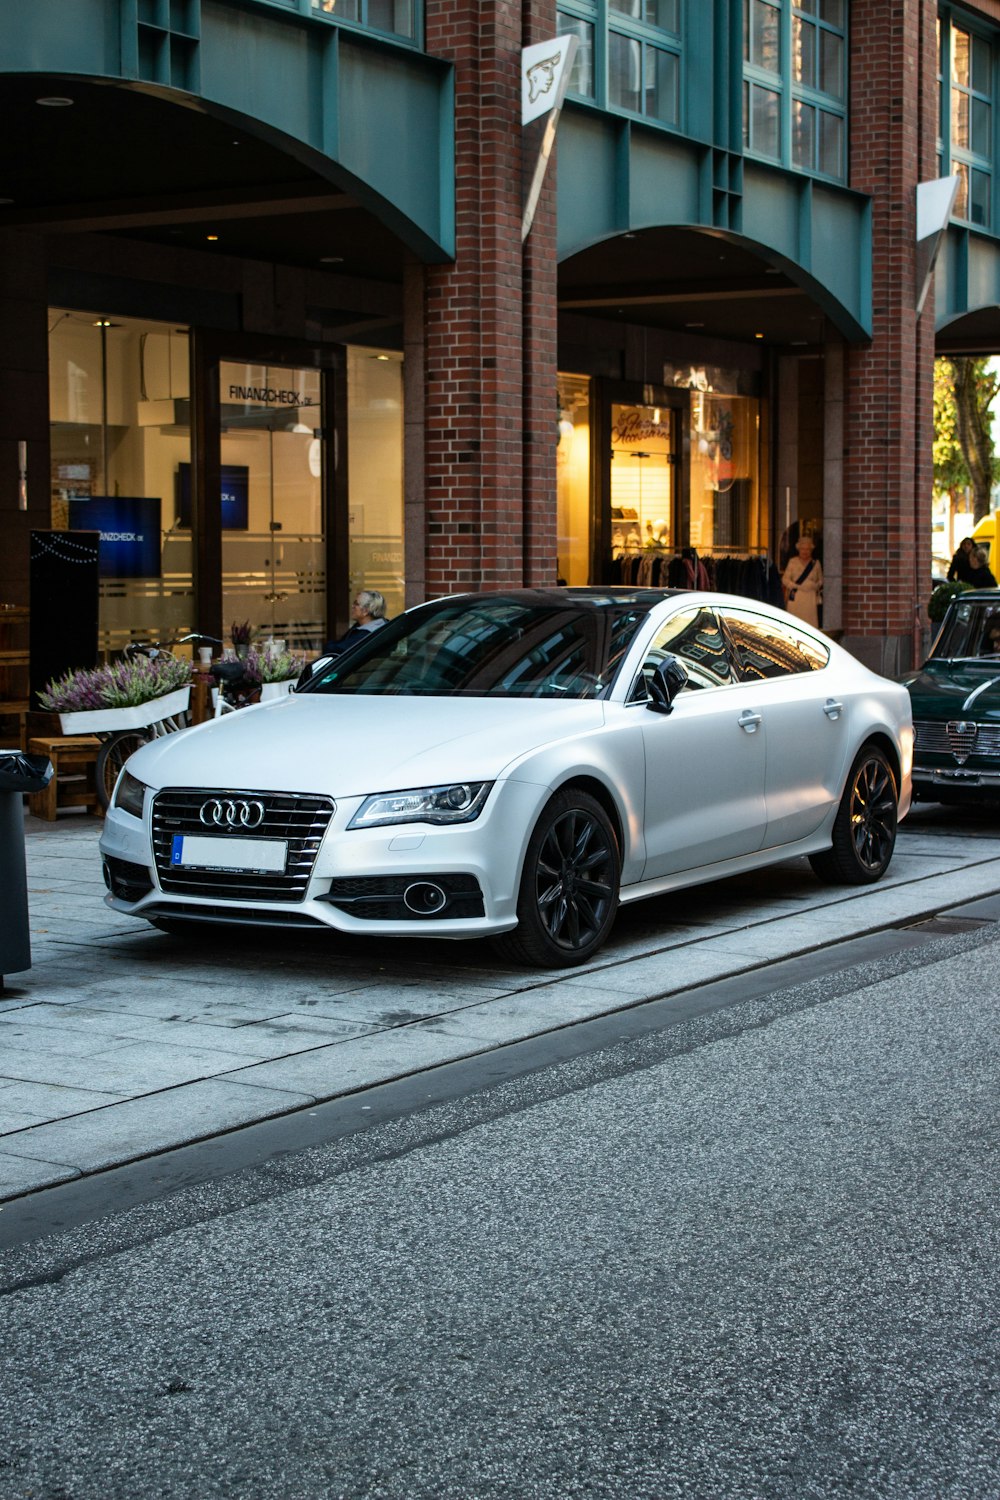 berline Audi argentée garée dans la rue à côté de la restauration